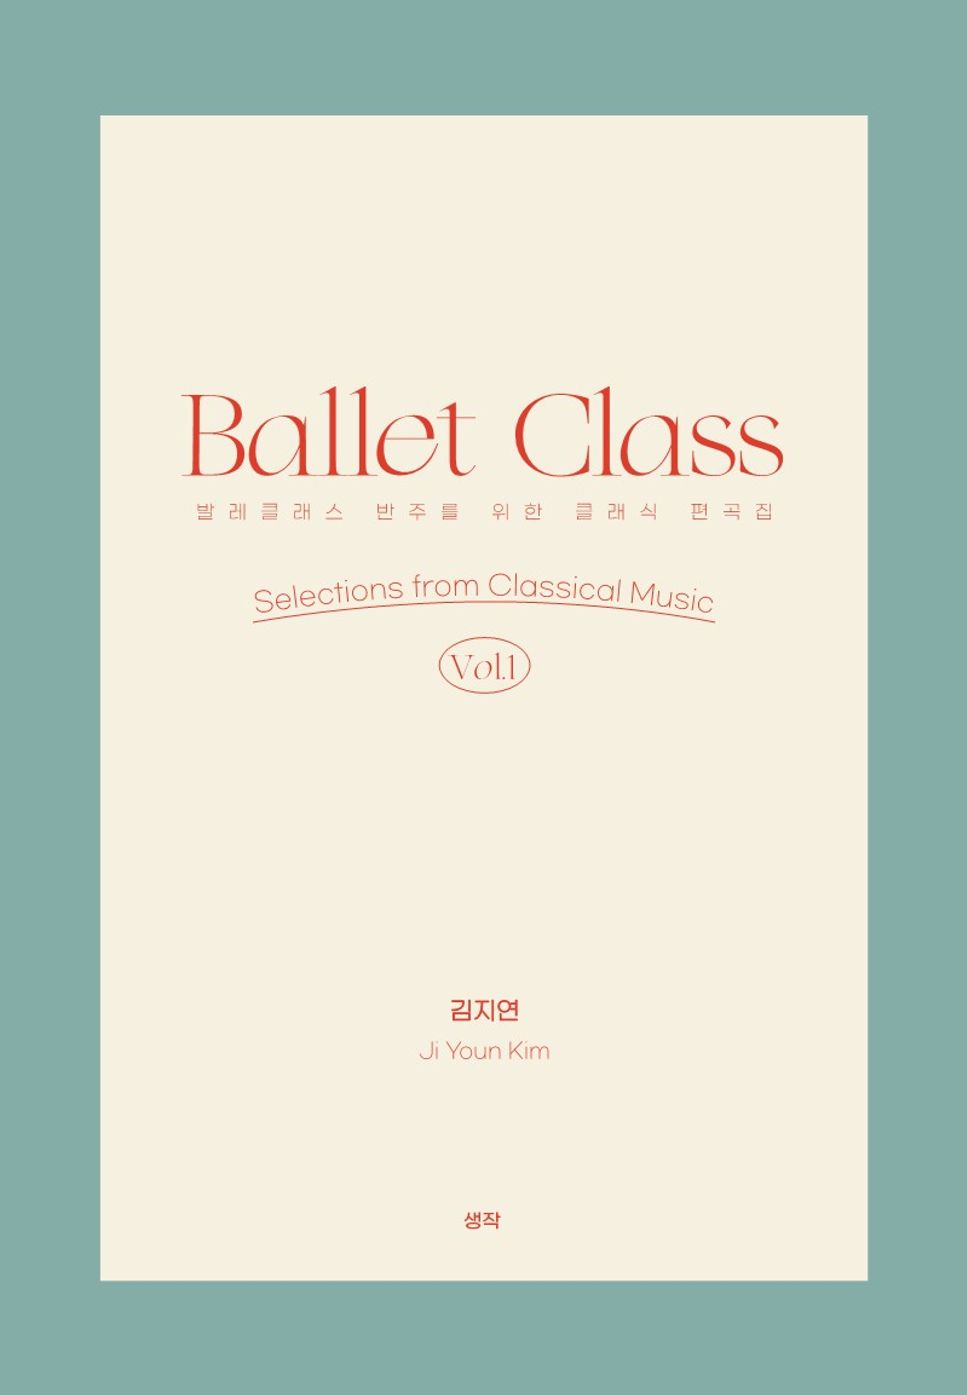 Ji Youn Kim - Ballet Class vol. 1 Selections from Classical Music (28tracks) by Ji  Youn Kim